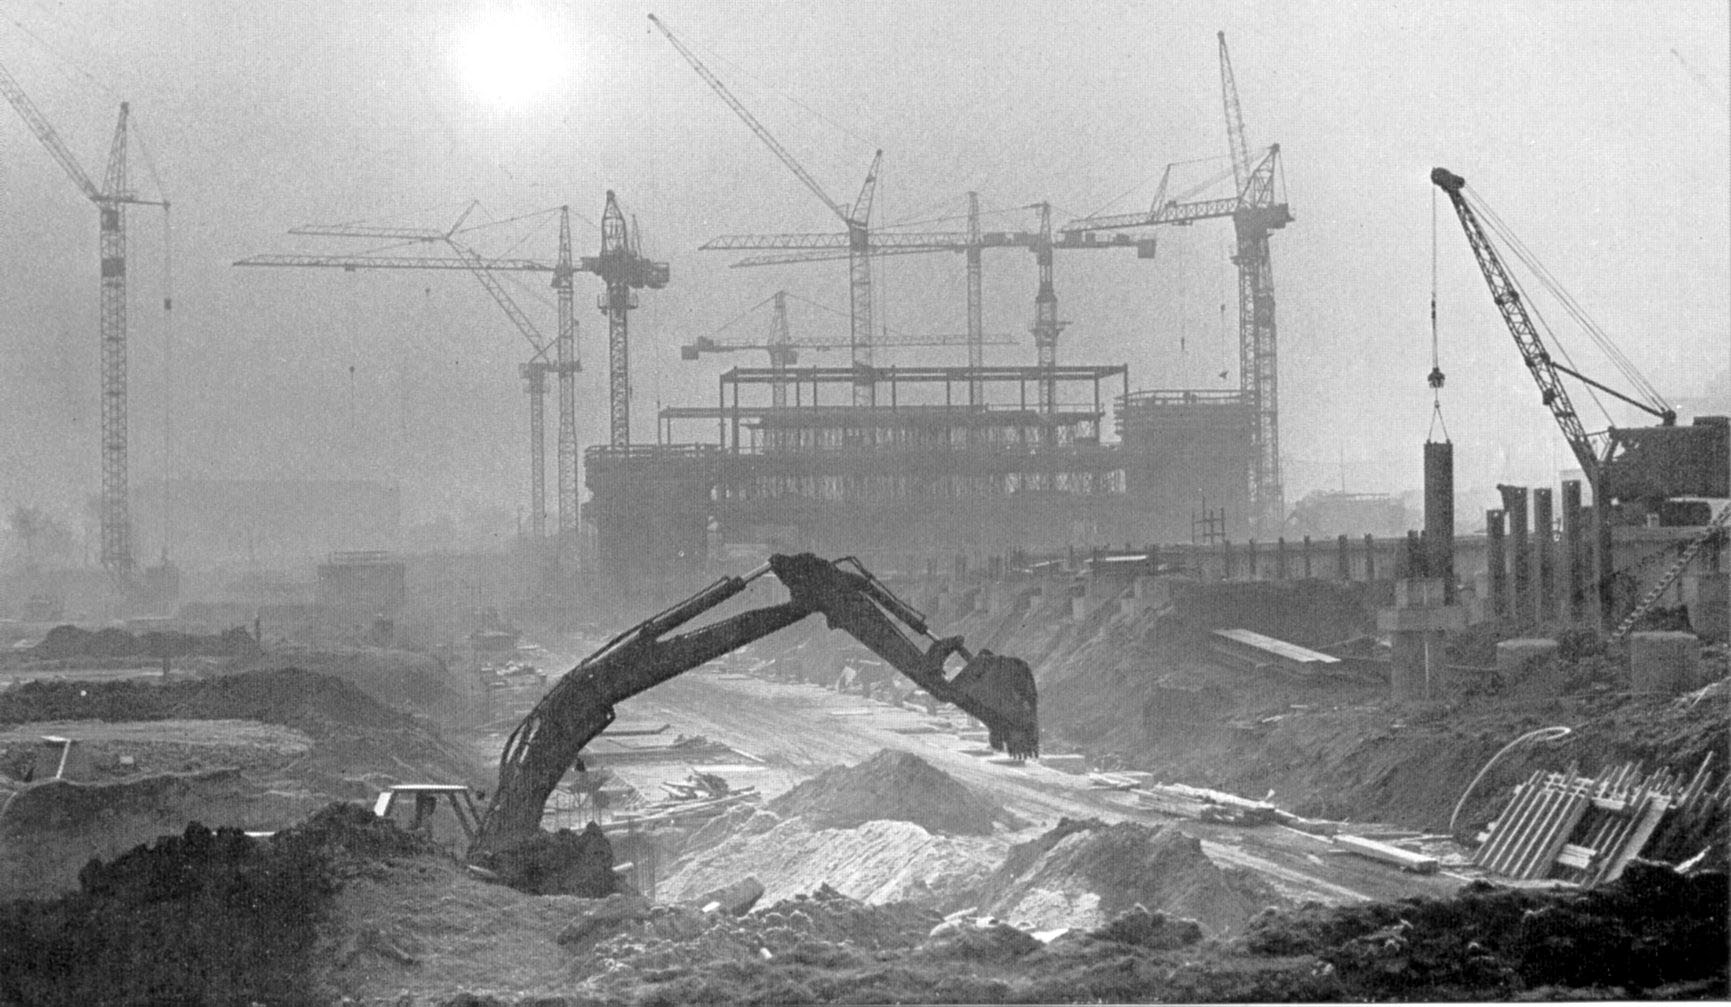 Bild Bagger vor Unibaustelle mit Baukränen 1. Hälfte 1970er Jahre